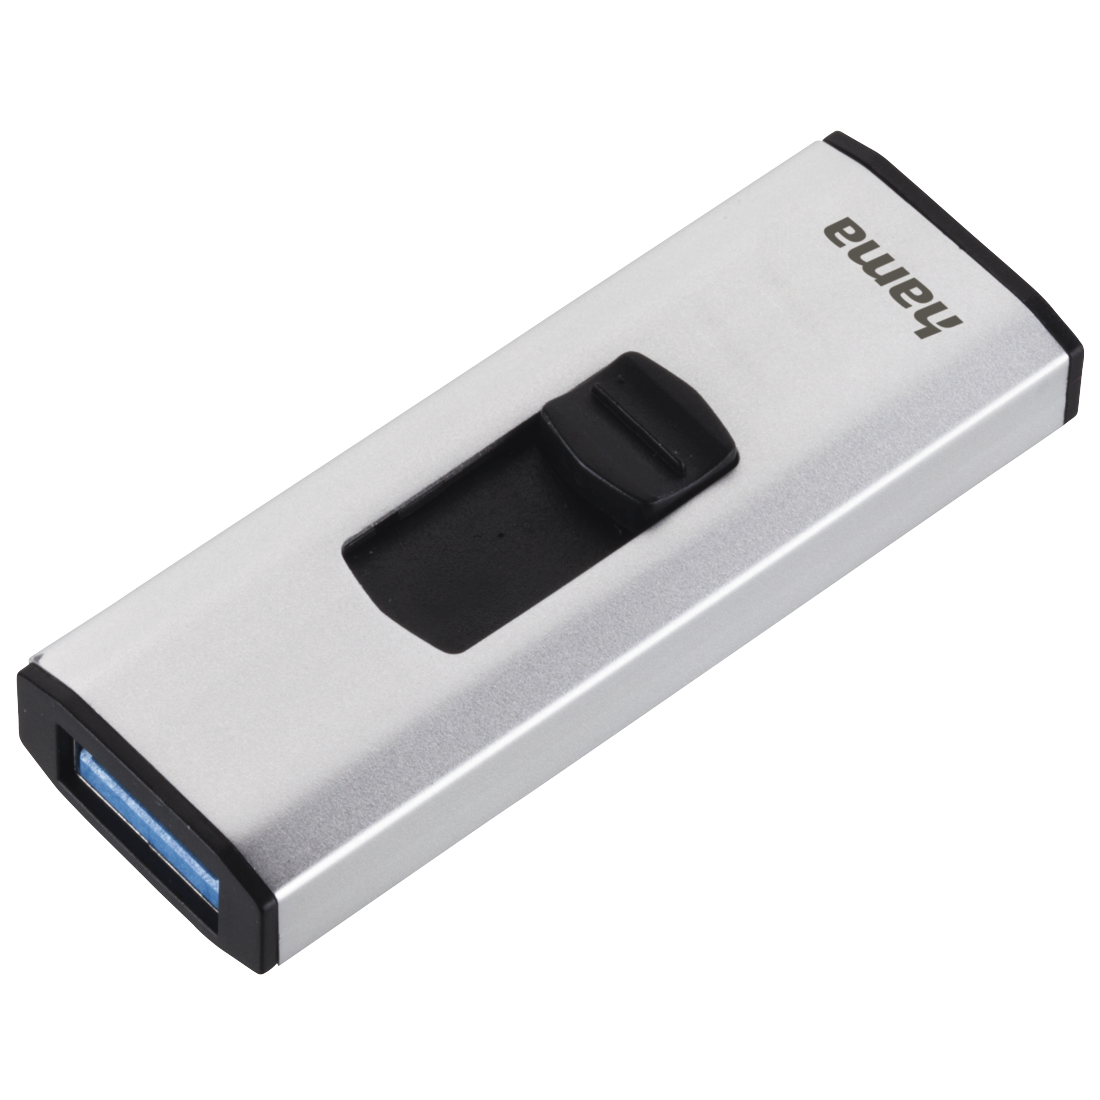 00124182 Hama "4Bizz" USB Stick, USB 3.0, 64 GB, 70 MB/s, silver/black